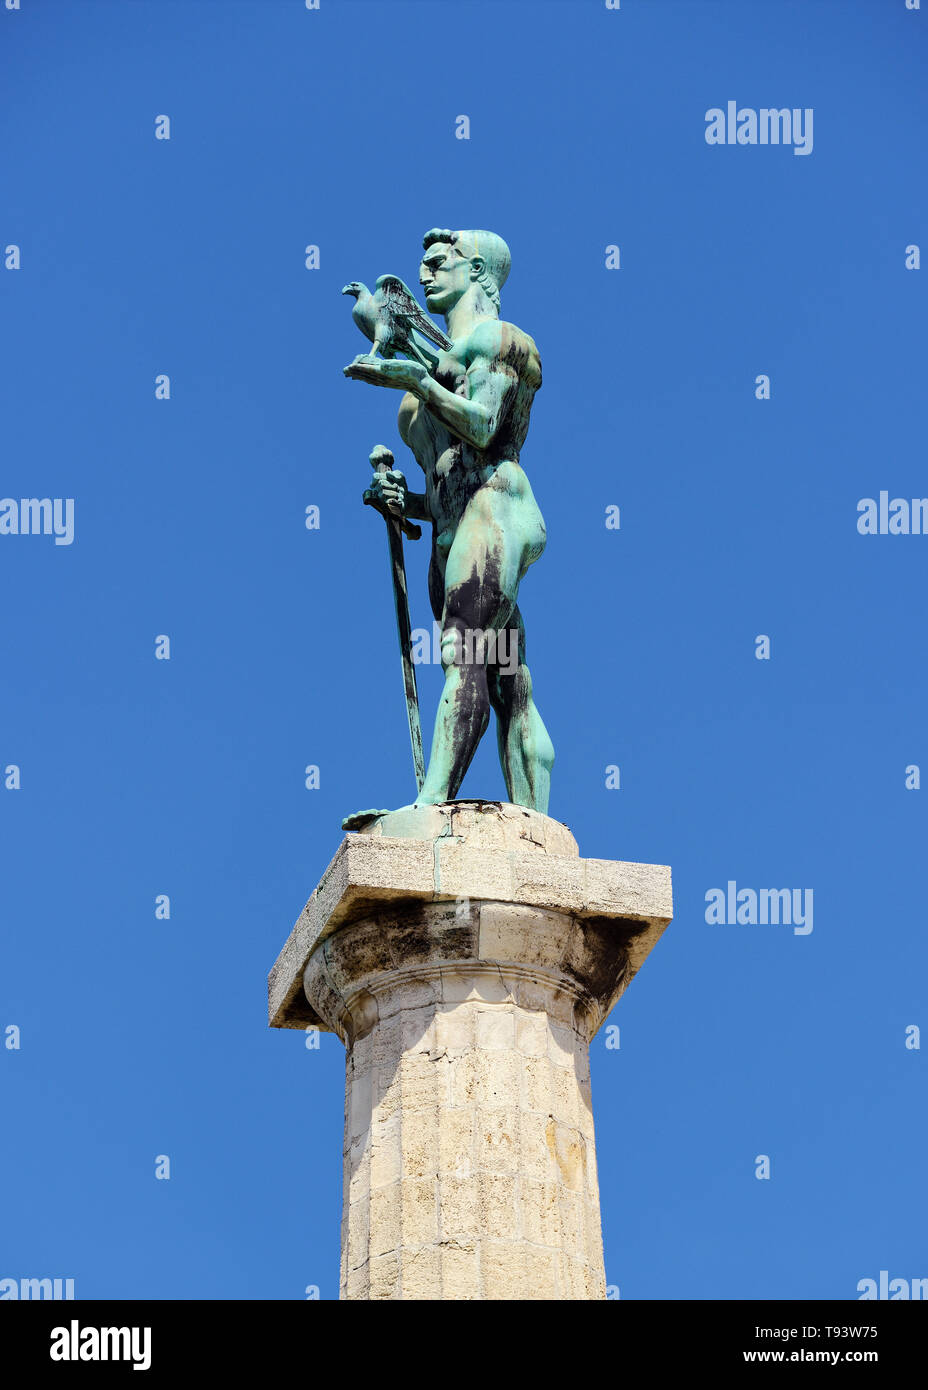 Il Victor monumento, Pobednik, Belgrado, Serbia. Costruito per commemorare la Serbia il vittoria sul pouf e impero austro-ungarico durante le guerre nei Balcani Foto Stock